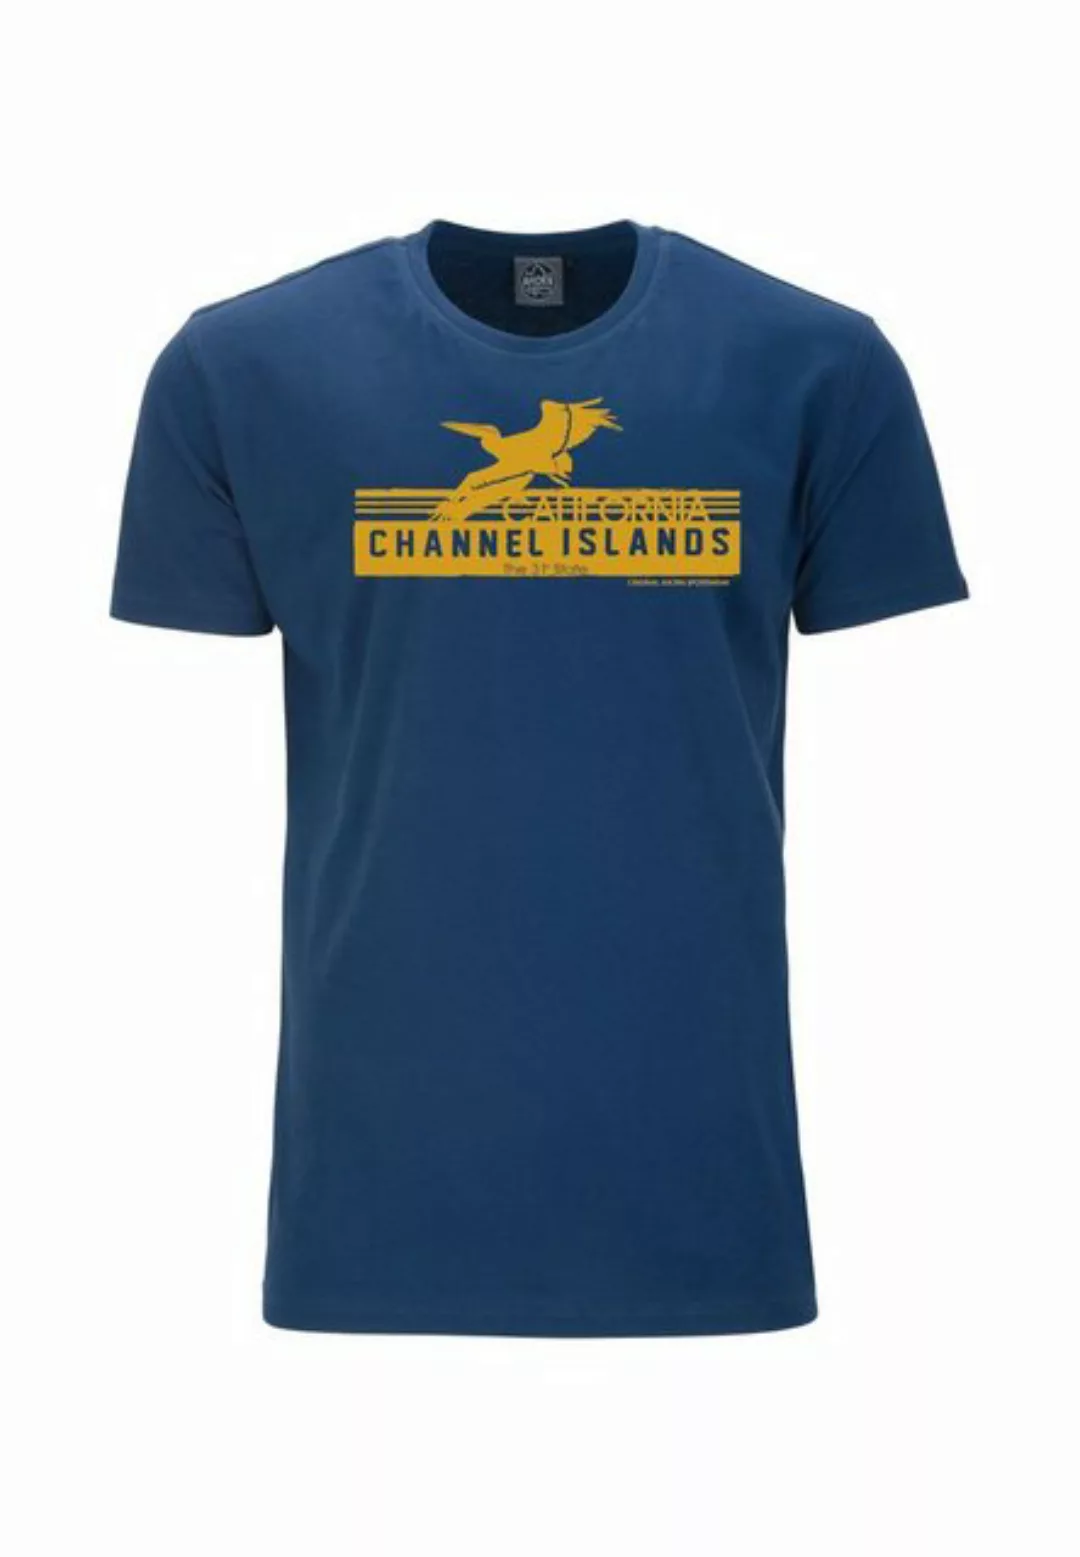 AHORN SPORTSWEAR T-Shirt CHANNEL ISLANDS mit tollem Frontprint günstig online kaufen